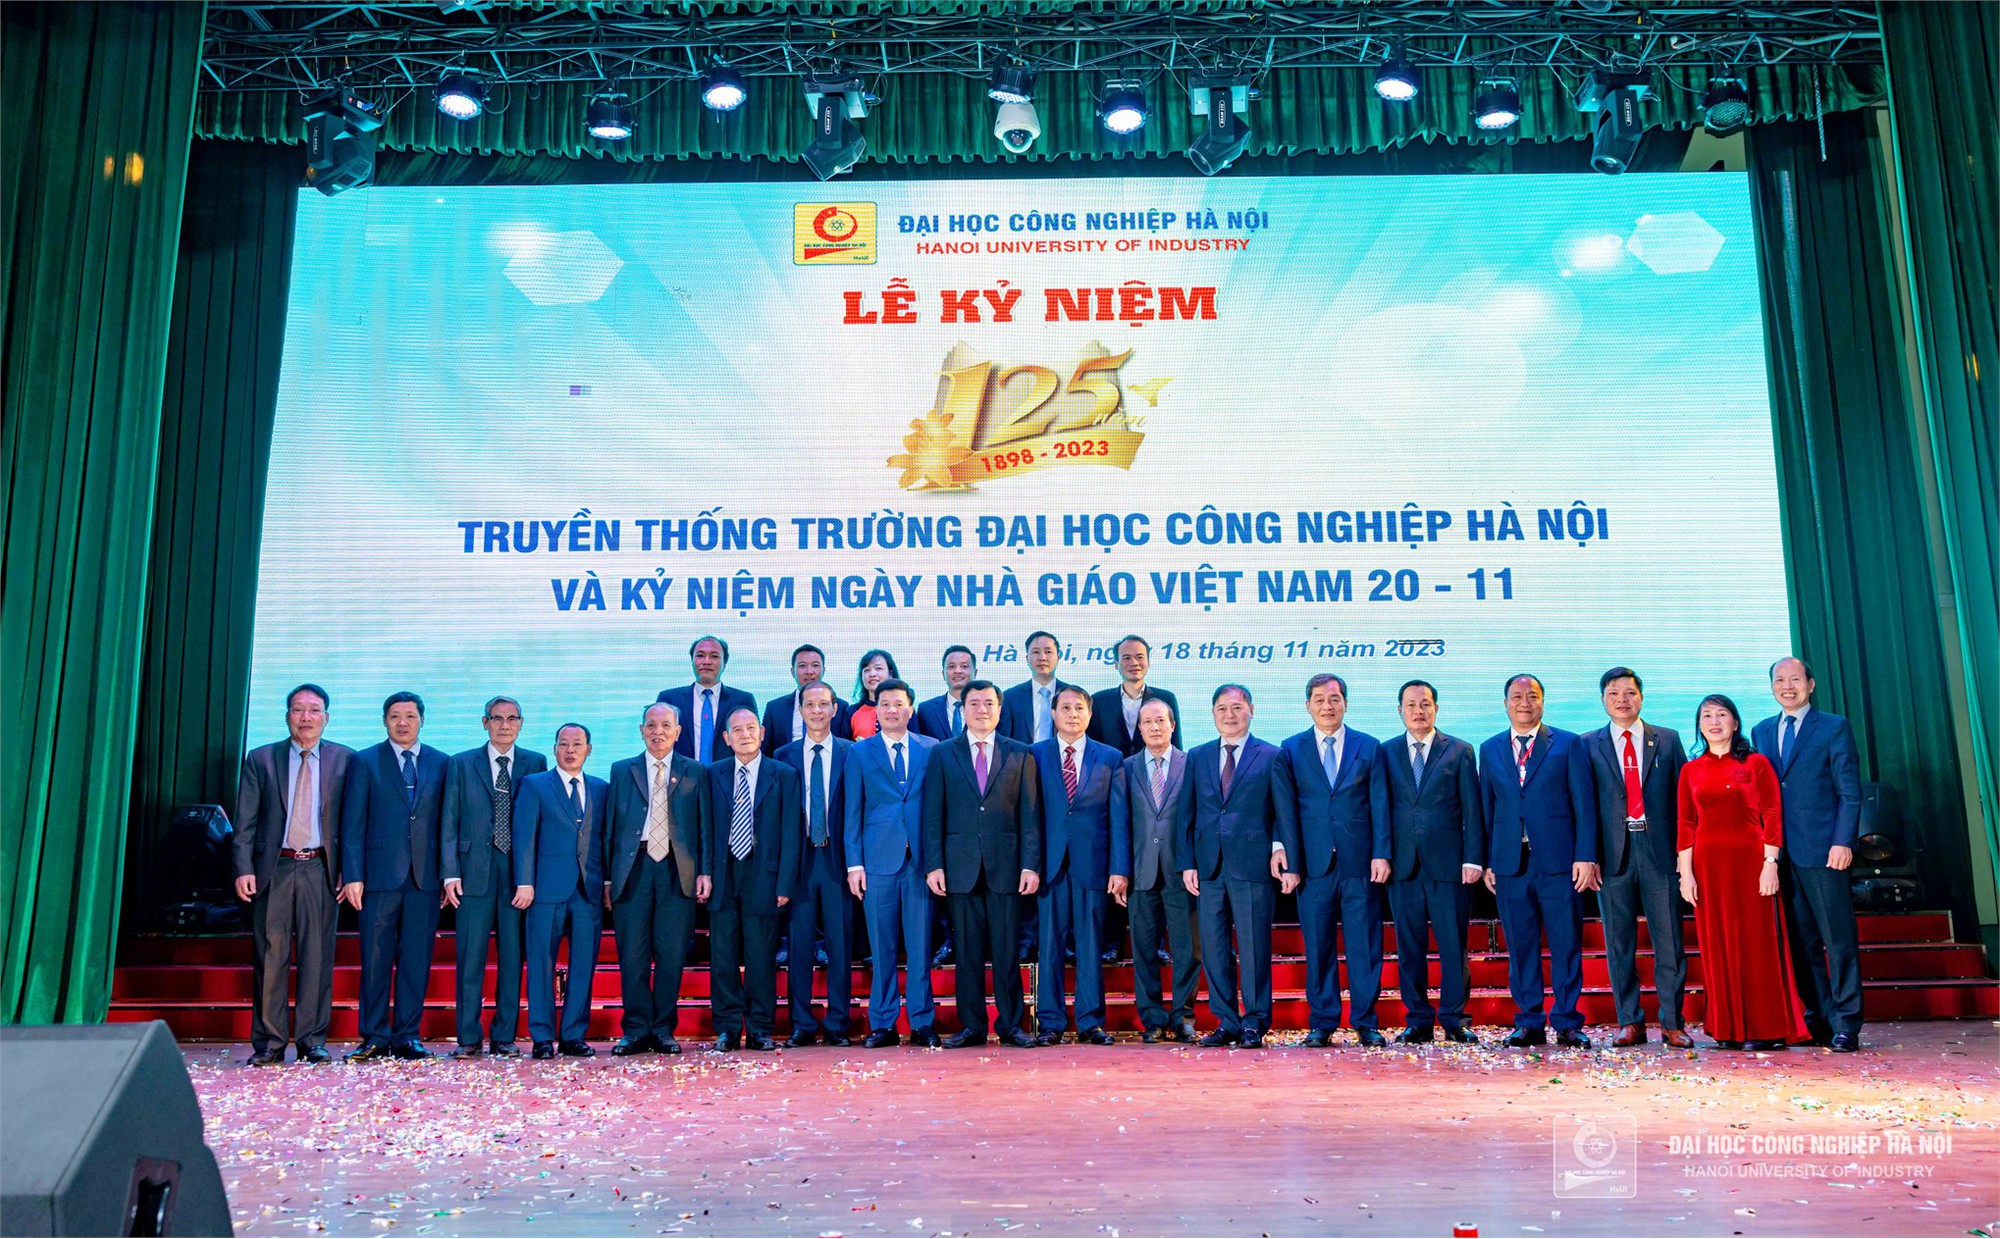 Lễ kỷ niệm 125 năm truyền thống Trường Đại học Công nghiệp Hà Nội (1898 – 2023) và 41 năm Ngày Nhà giáo Việt Nam 20/11 - Ảnh 11.